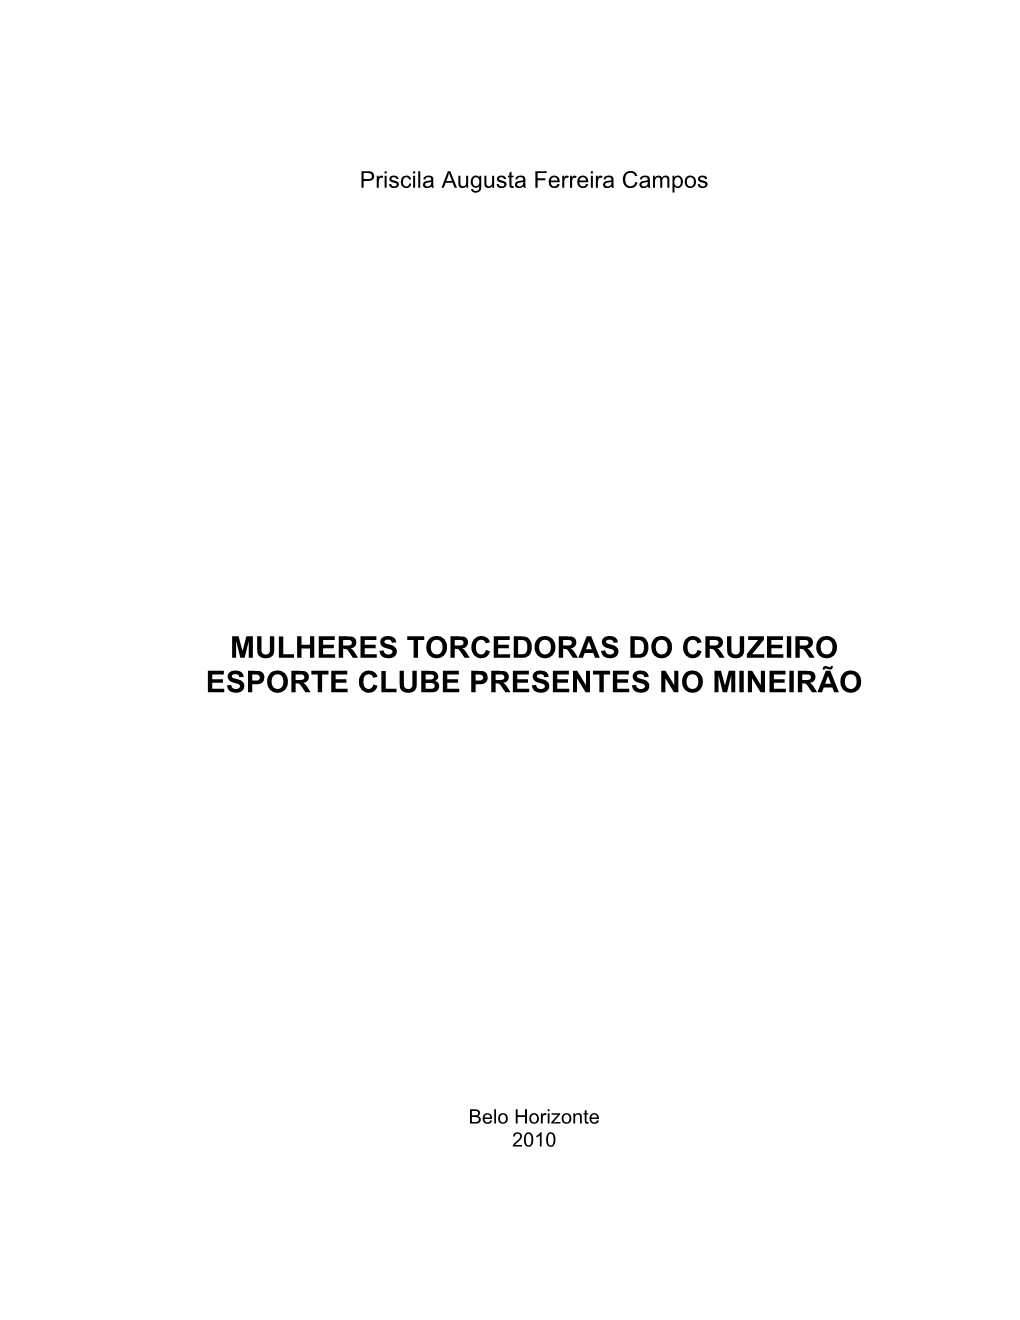 Mulheres Torcedoras Do Cruzeiro Esporte Clube Presentes No Mineirão